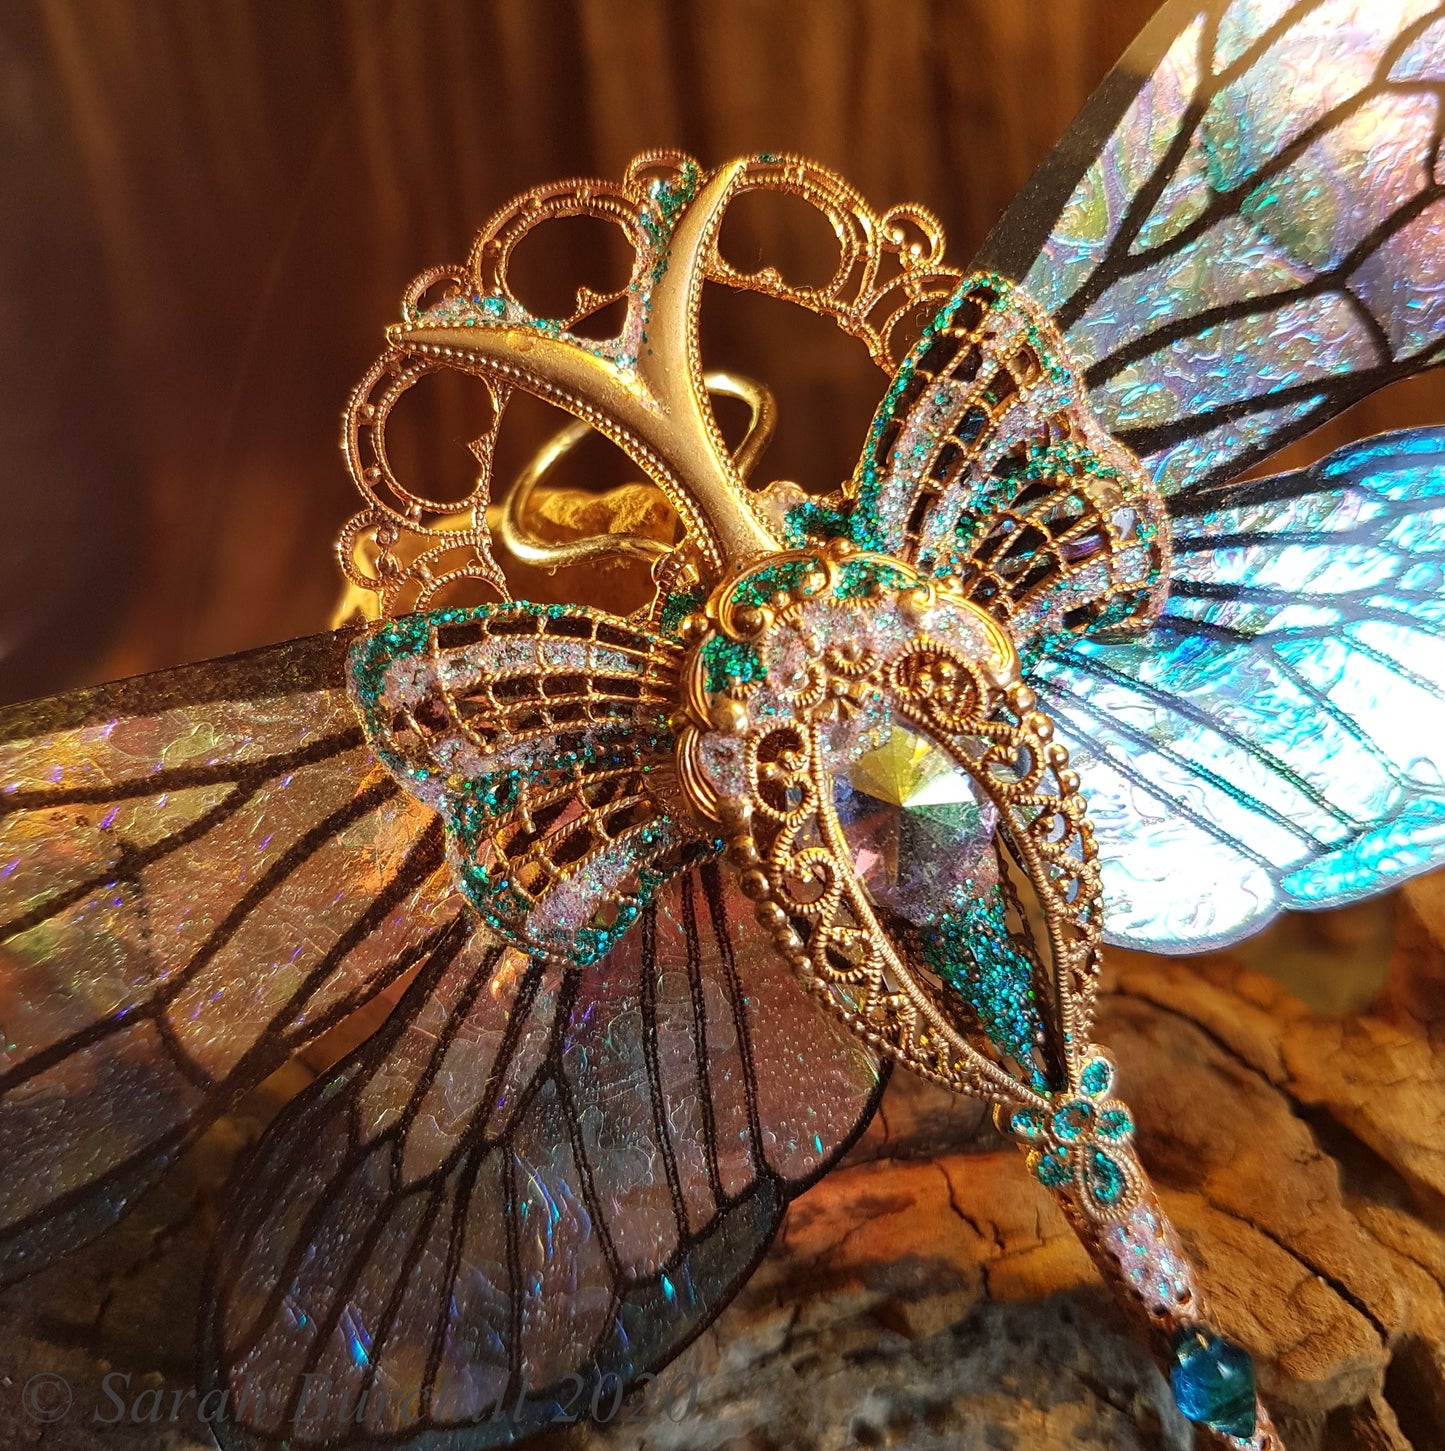 Elunarian Dragonfly - Aquamarine